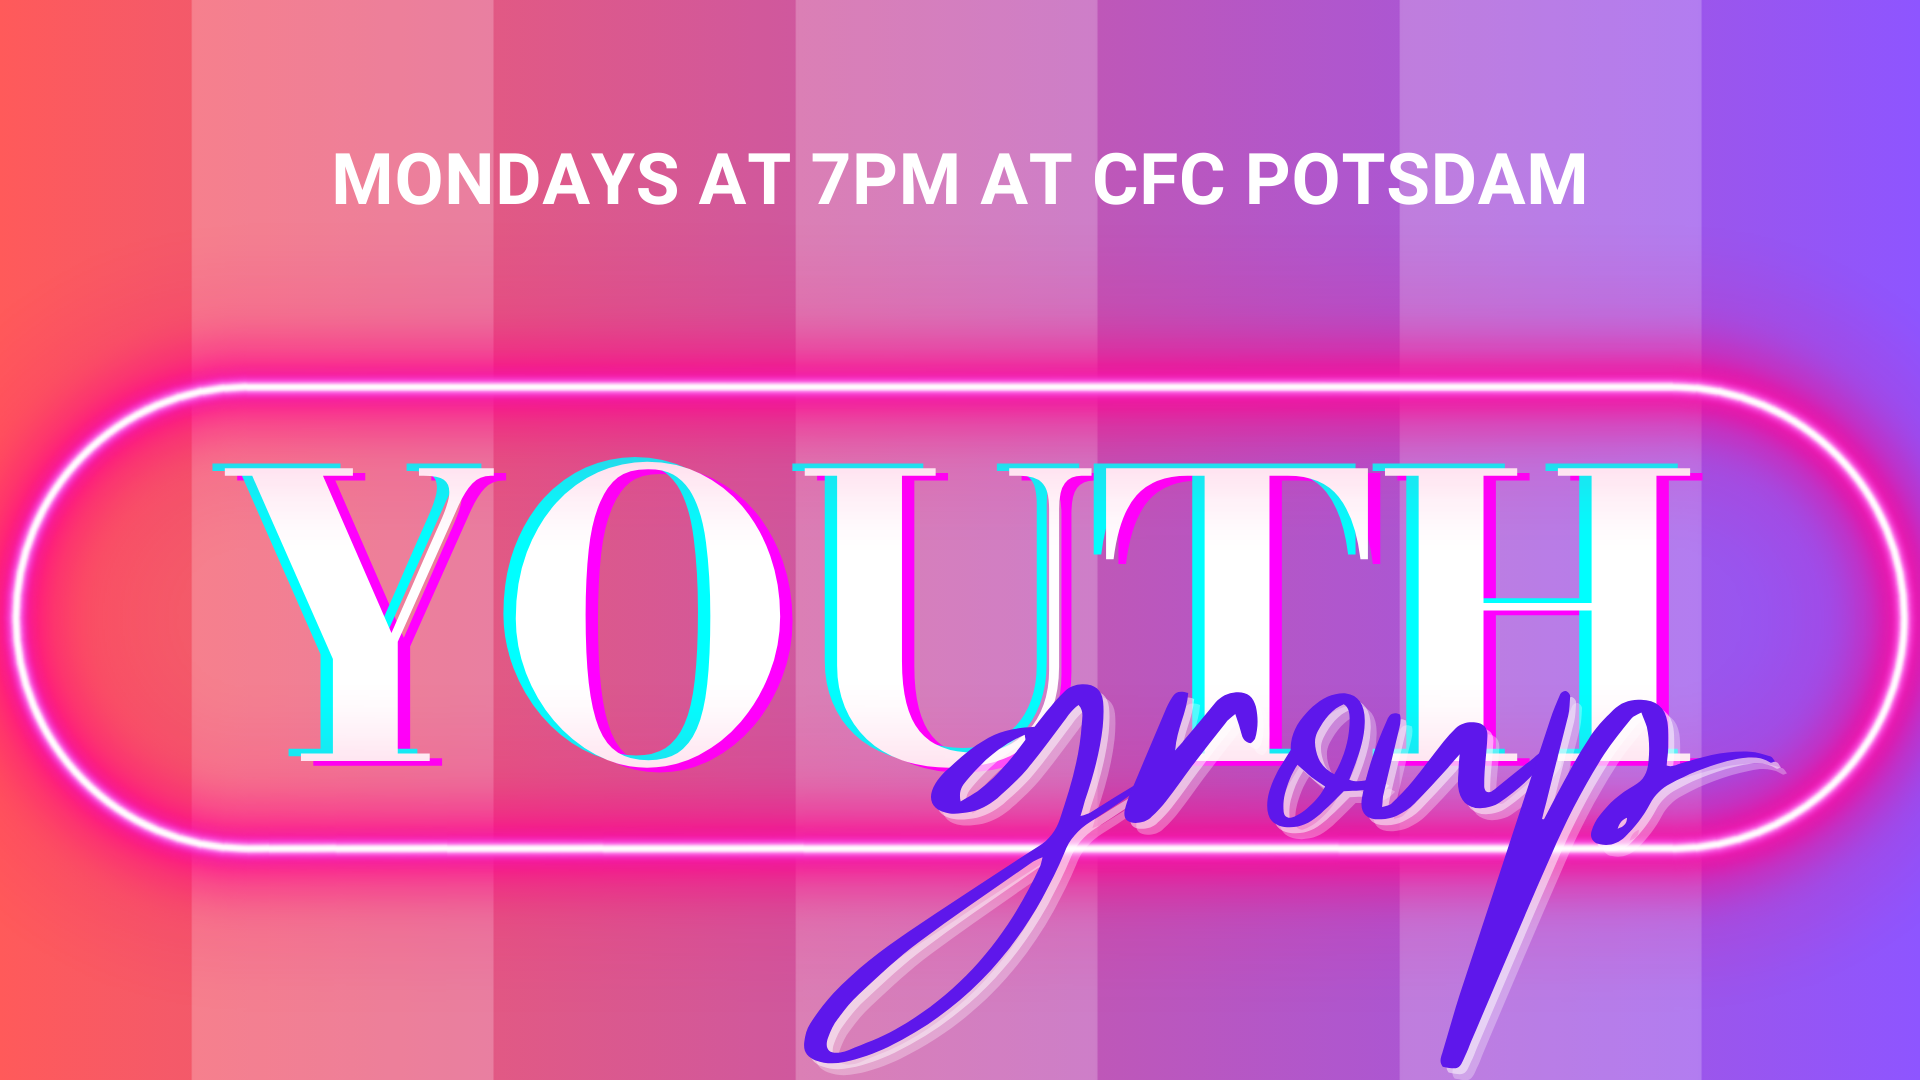 Mondays at 7pm at CFC Potsdam image